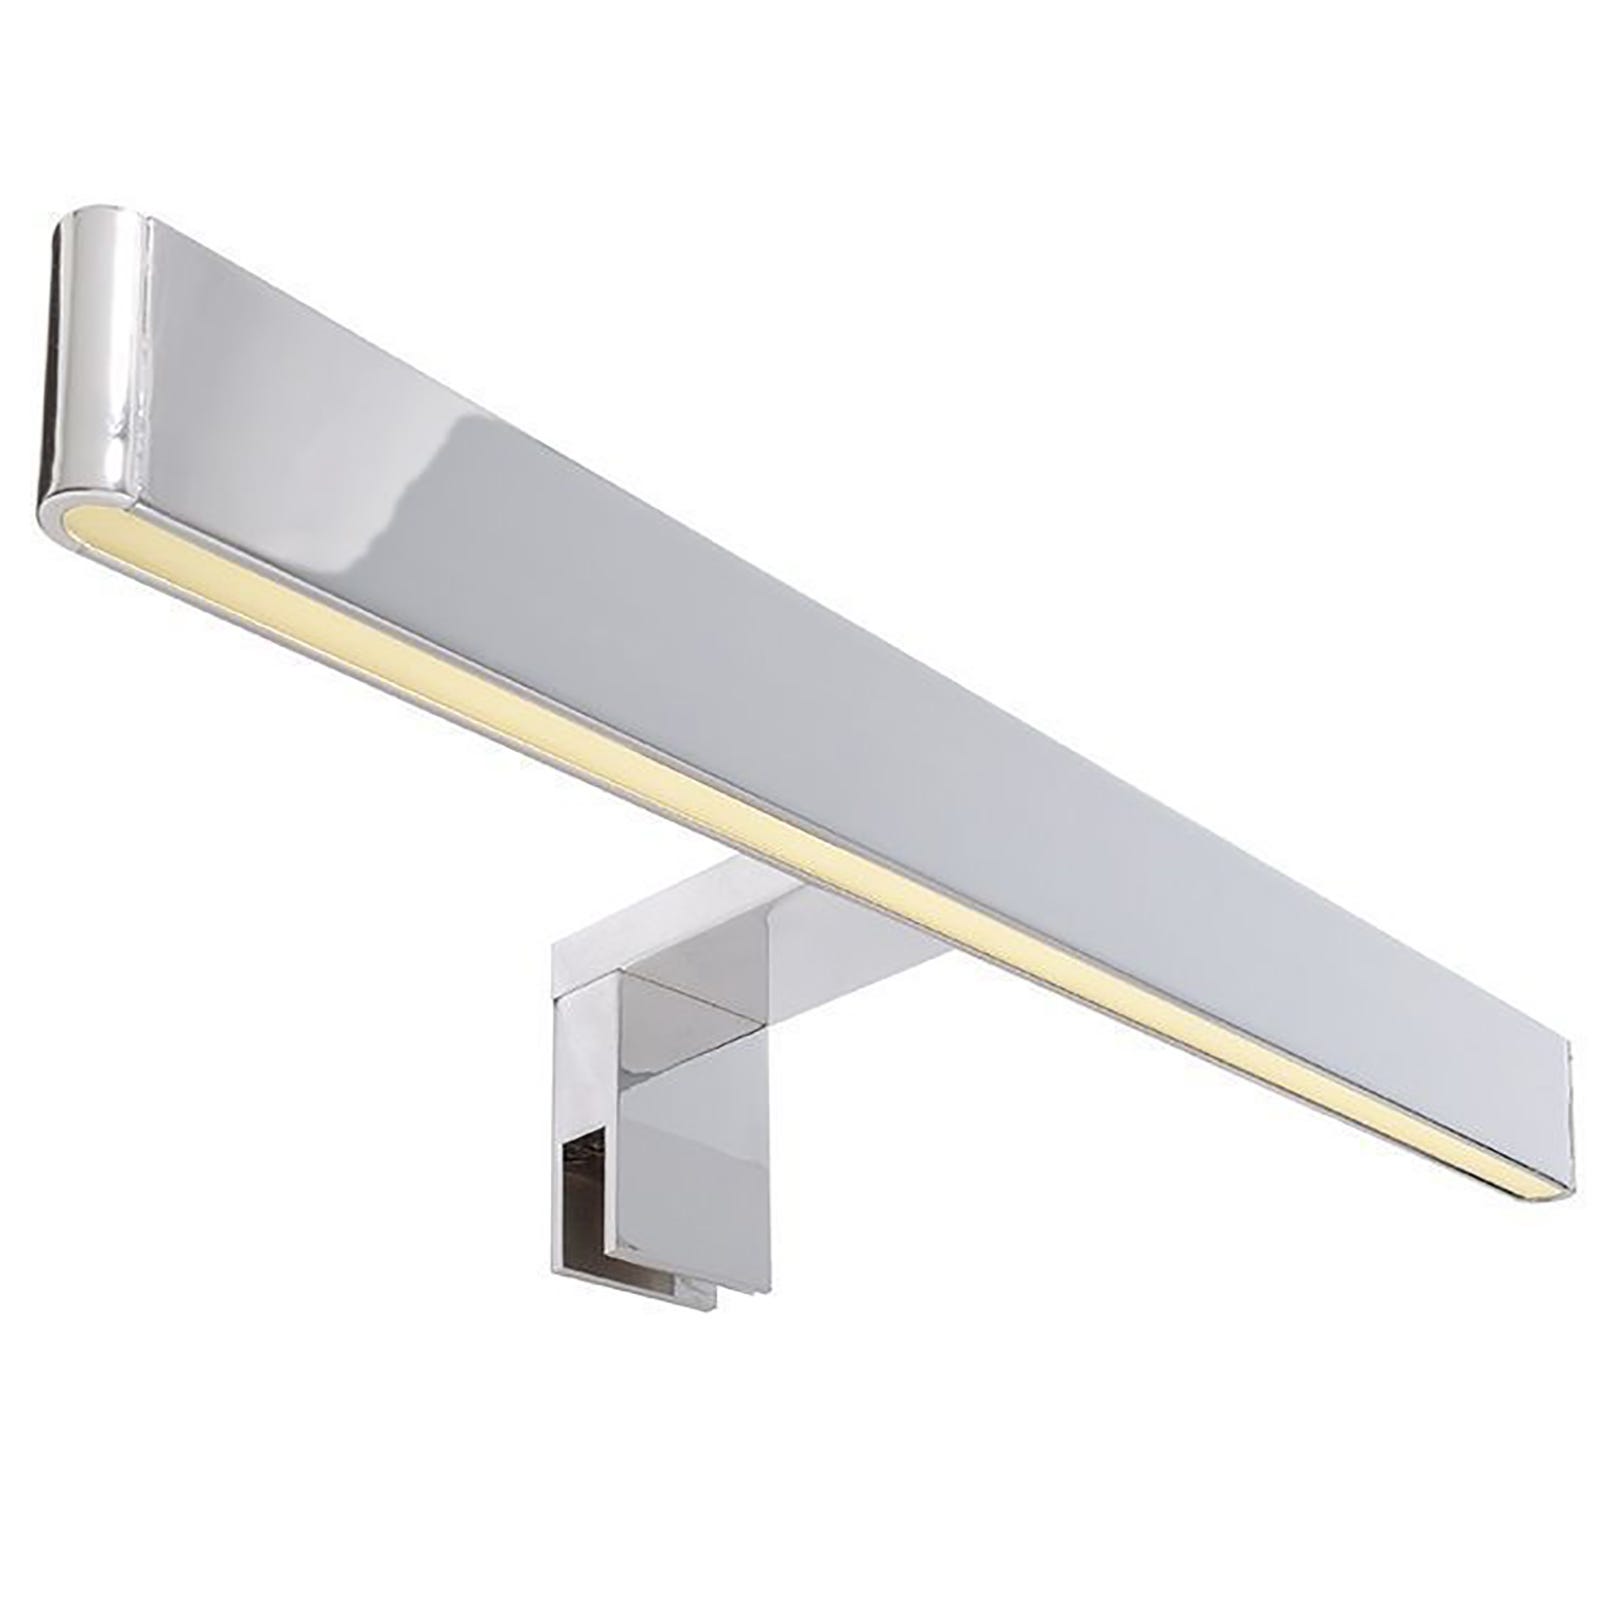 Applique specchio lampada luce LED 8W 12V silver cromata illuminazione bagno  specchiera IP44 COLOR ARGENTO